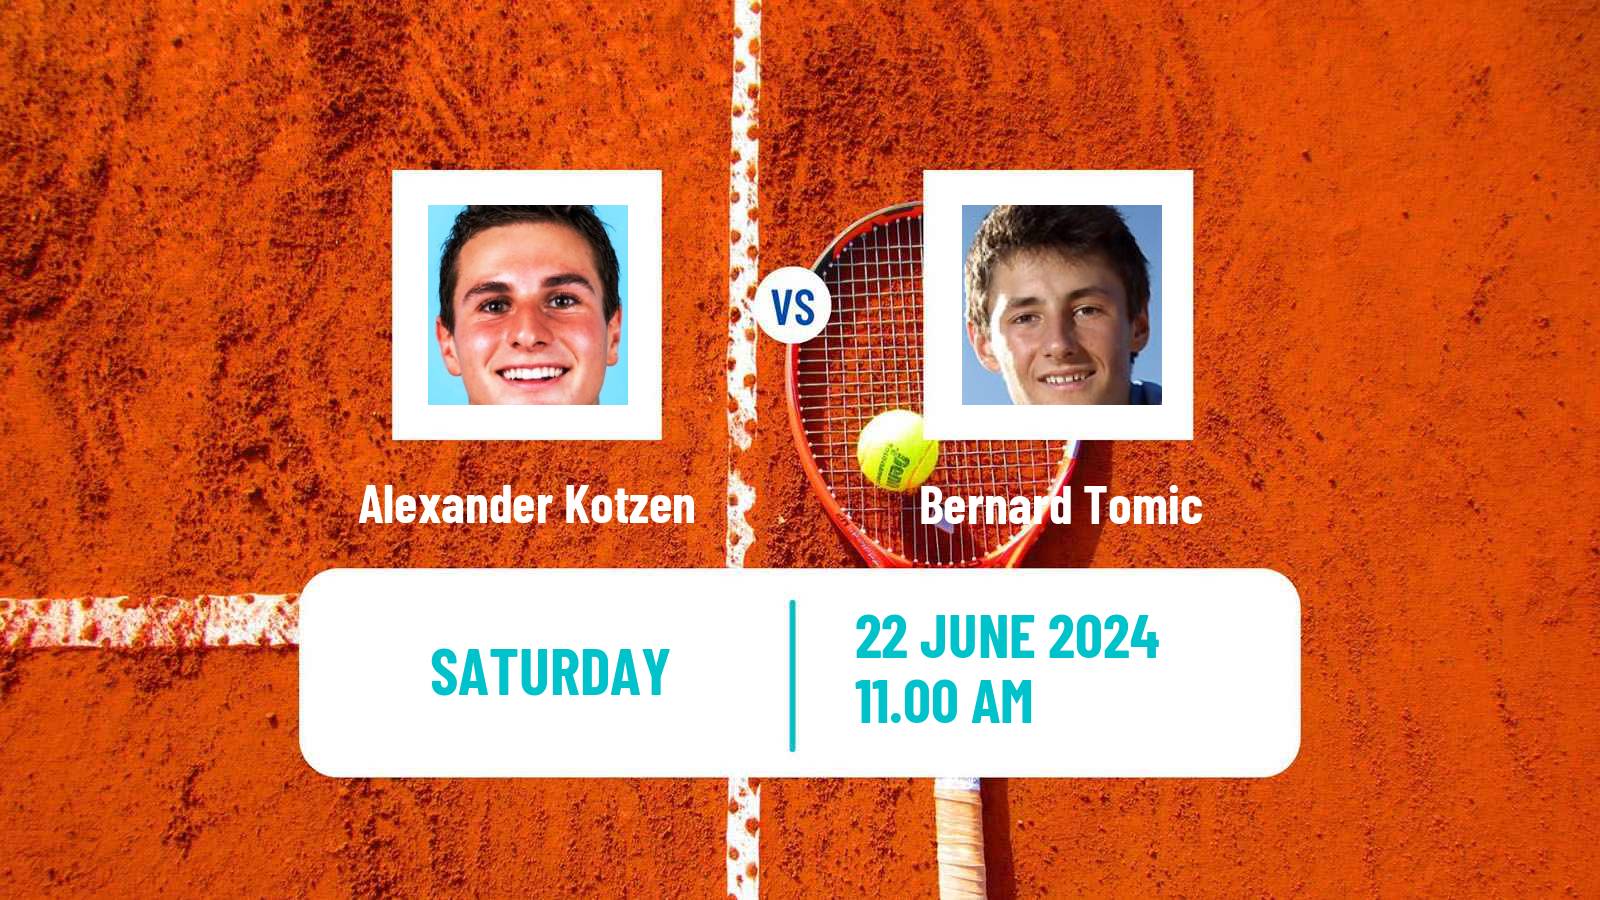 Tennis ITF M25 Tulsa Ok Men Alexander Kotzen - Bernard Tomic